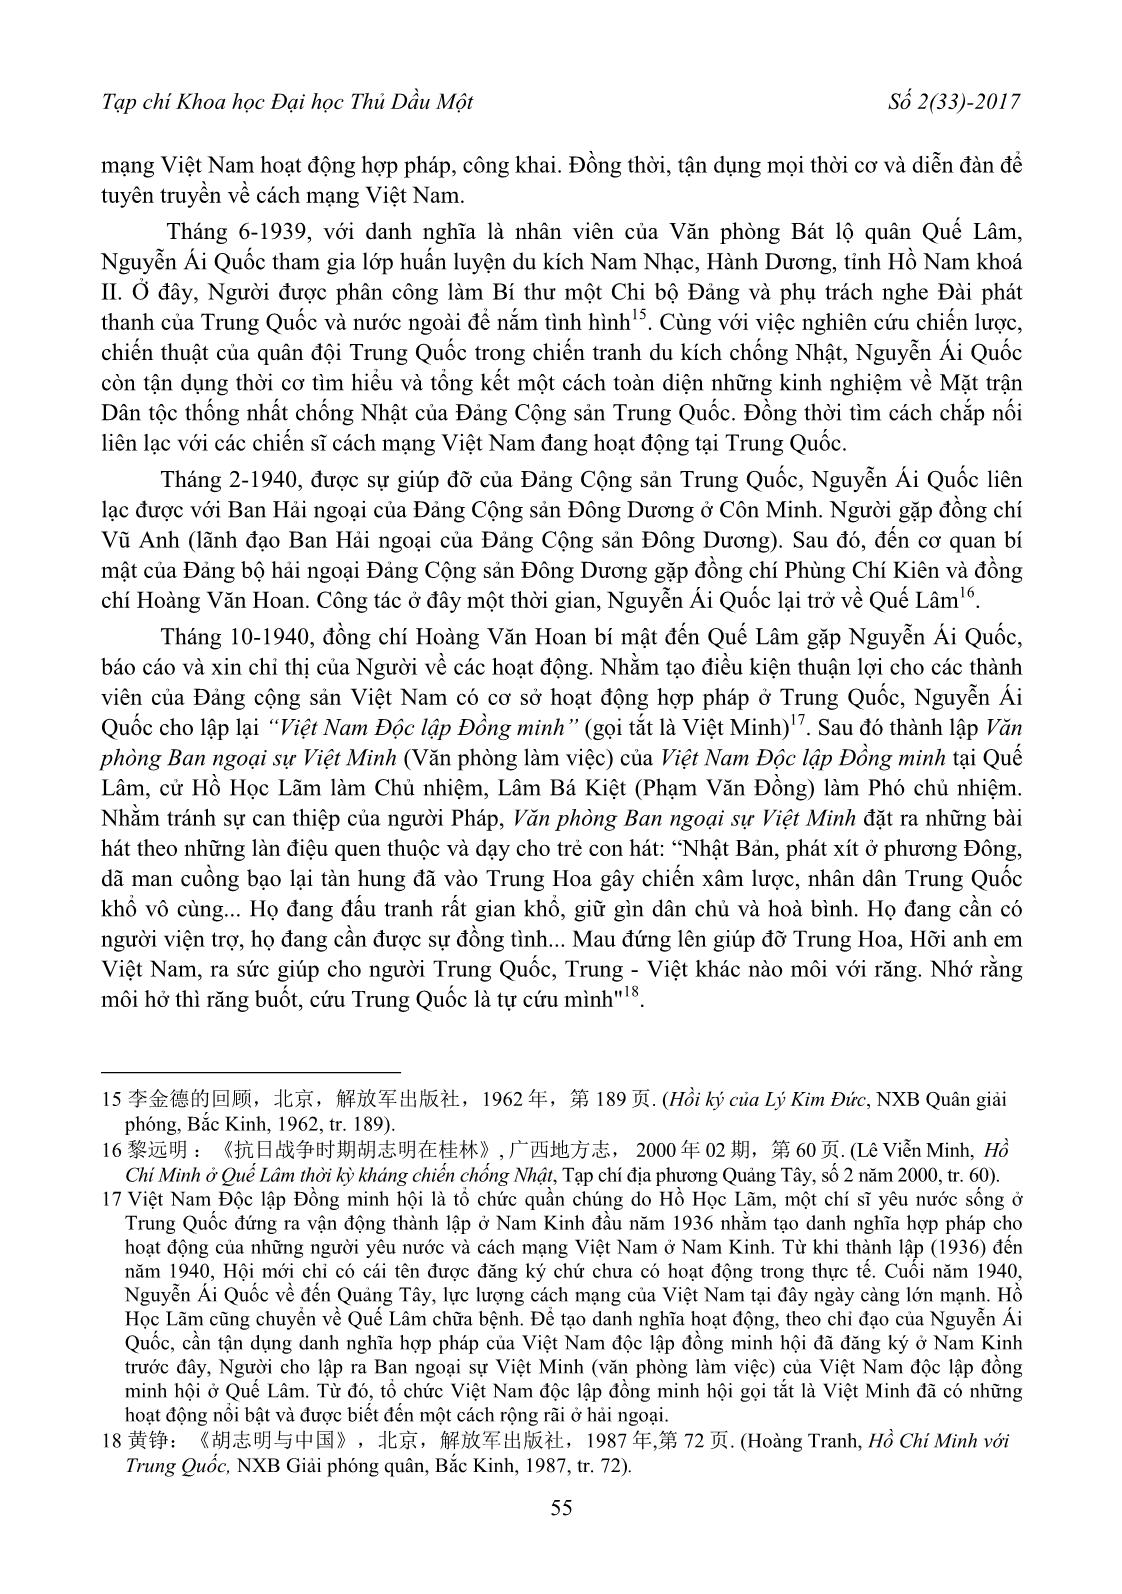 Tìm hiểu thêm về hoạt động của Nguyễn Ái Quốc ở Quế Lâm qua các tài liệu nghiên cứu của Trung Quốc trang 5